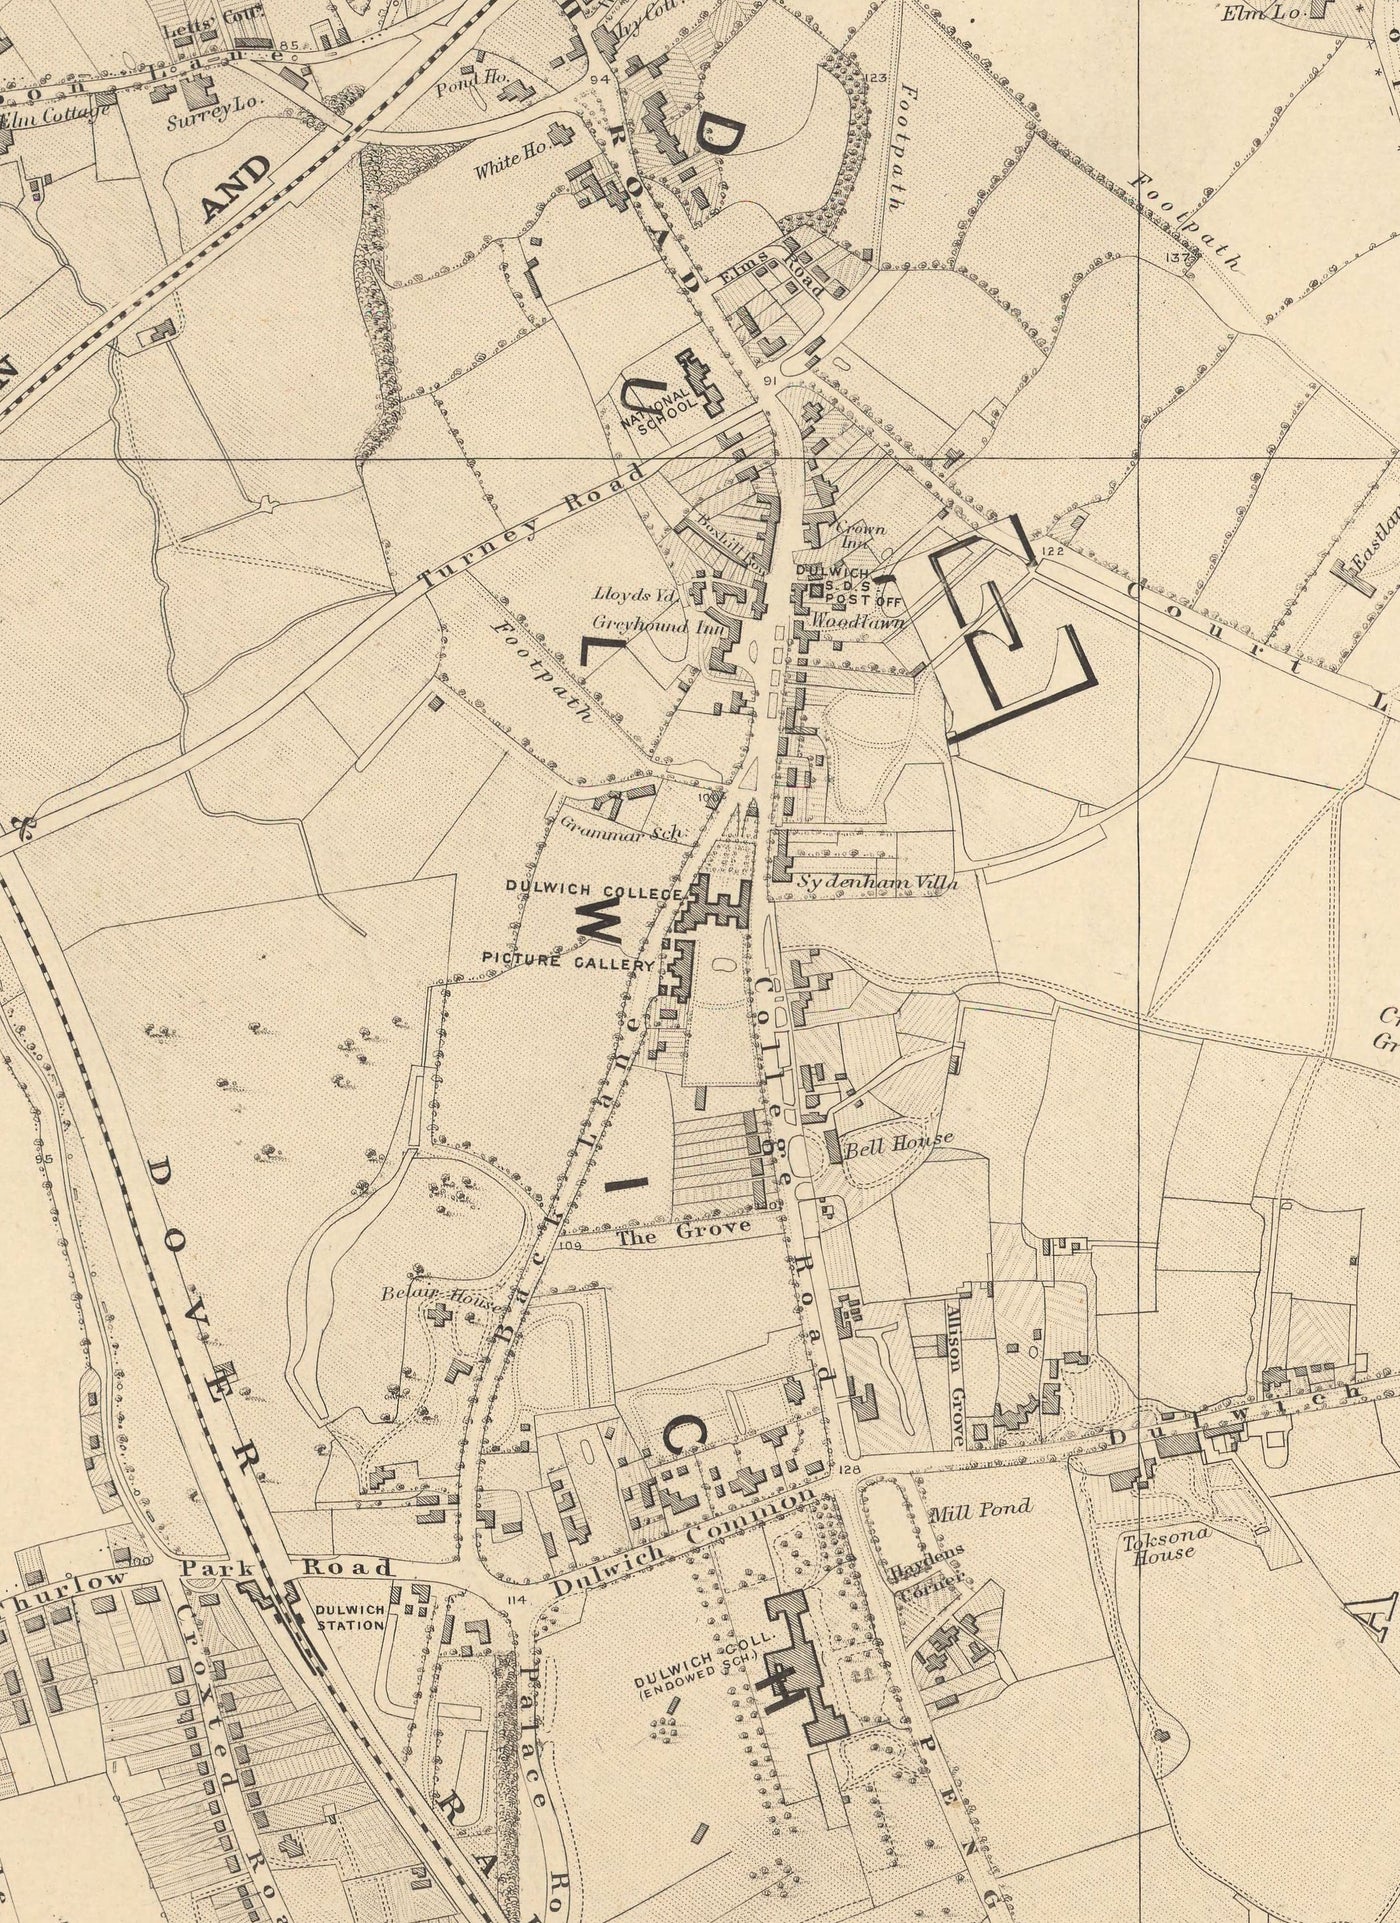 Alte Karte von South London 1862 von Edward Stanford - Dulwich, Peckham Rye, Herne Hill, Forest Hill - SE24, SE22, SE21, SE23